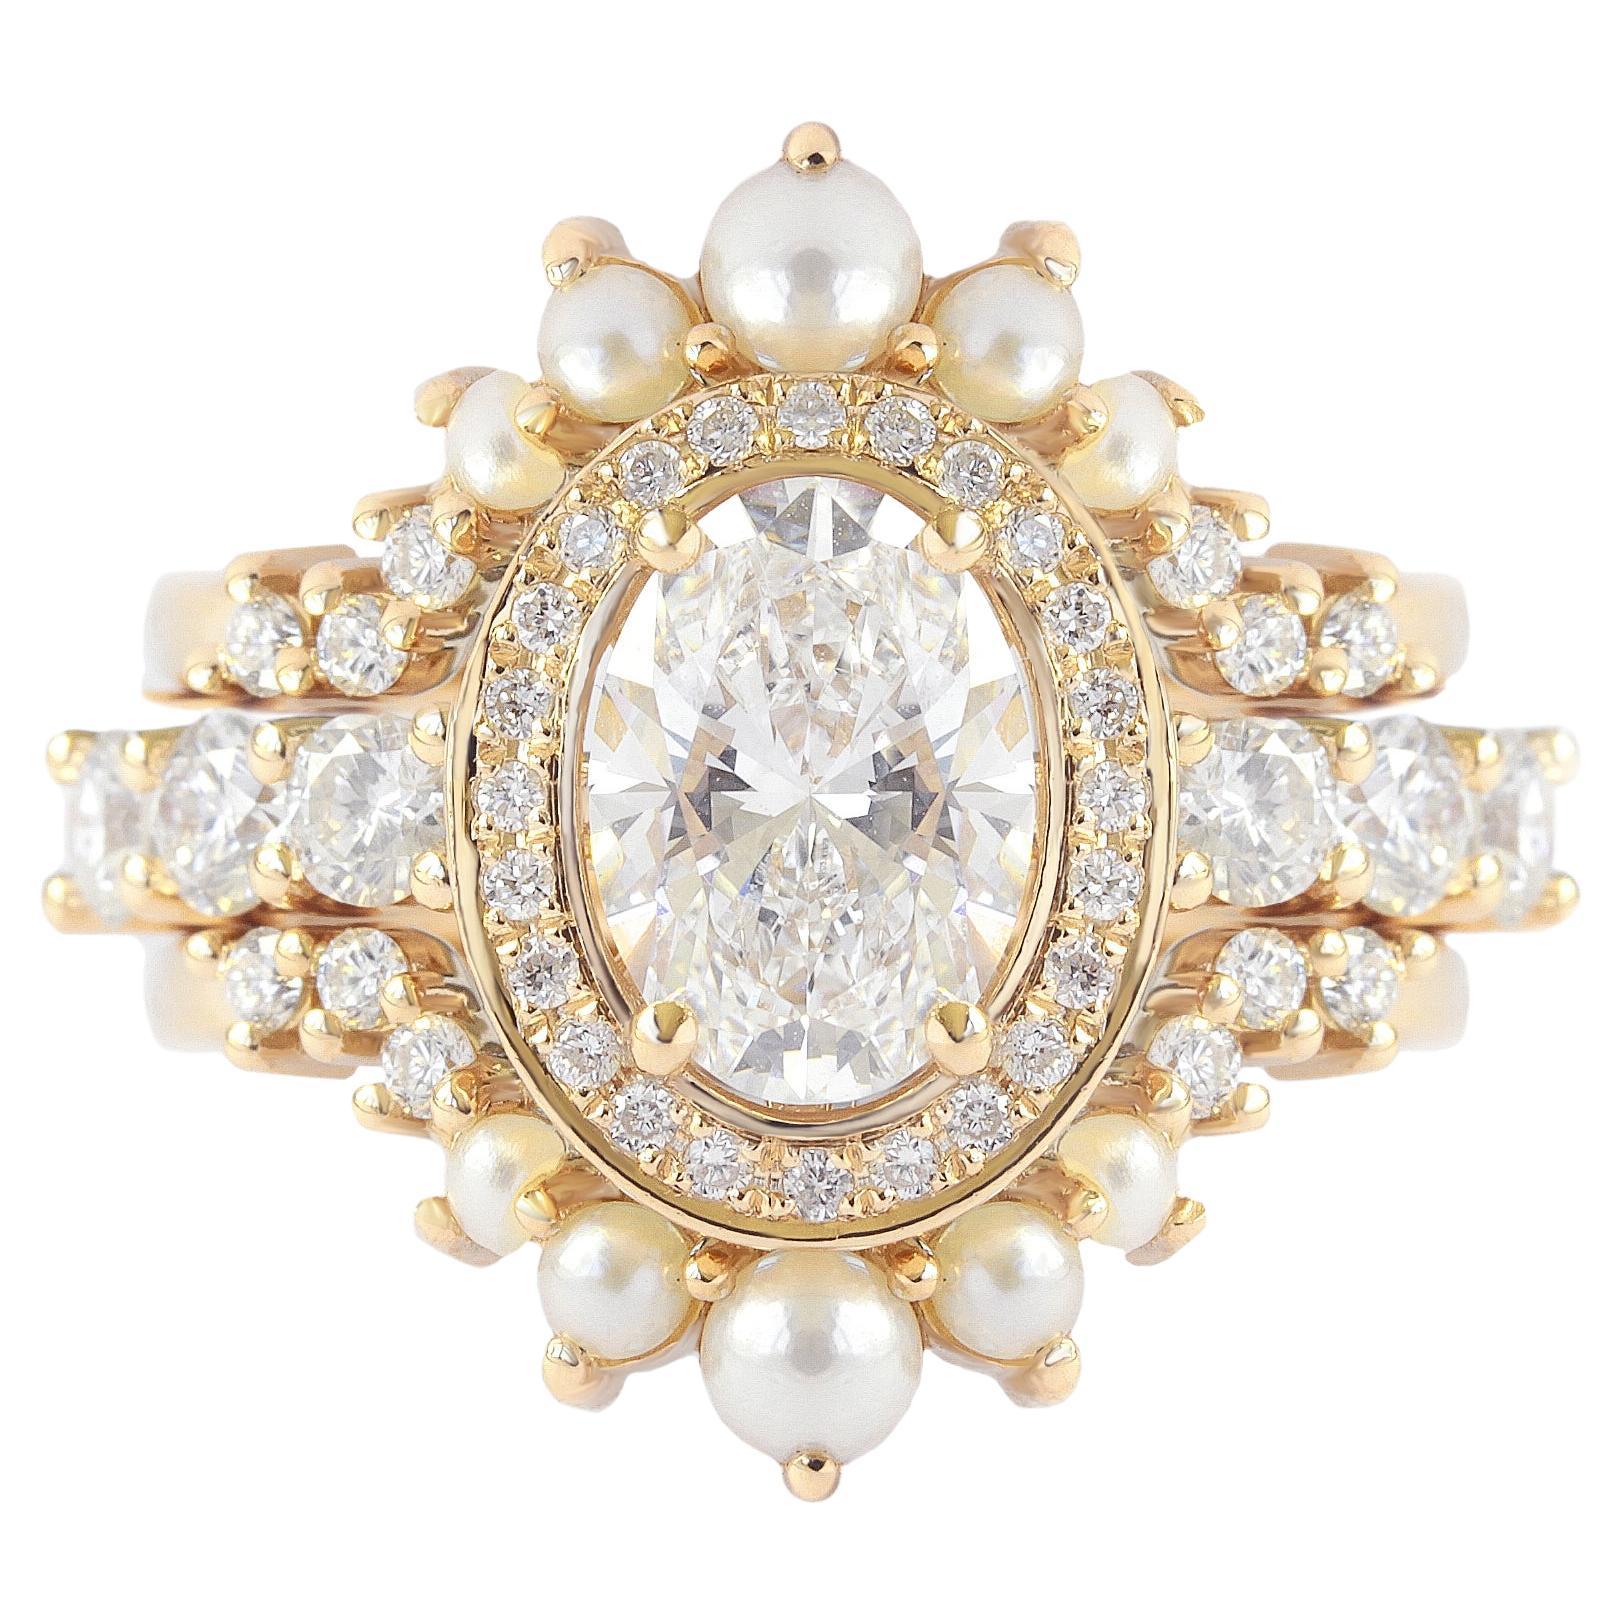 Einzigartiger Verlobungsring mit ovalem Diamant und Perlenbesatz, Dreier-Ring